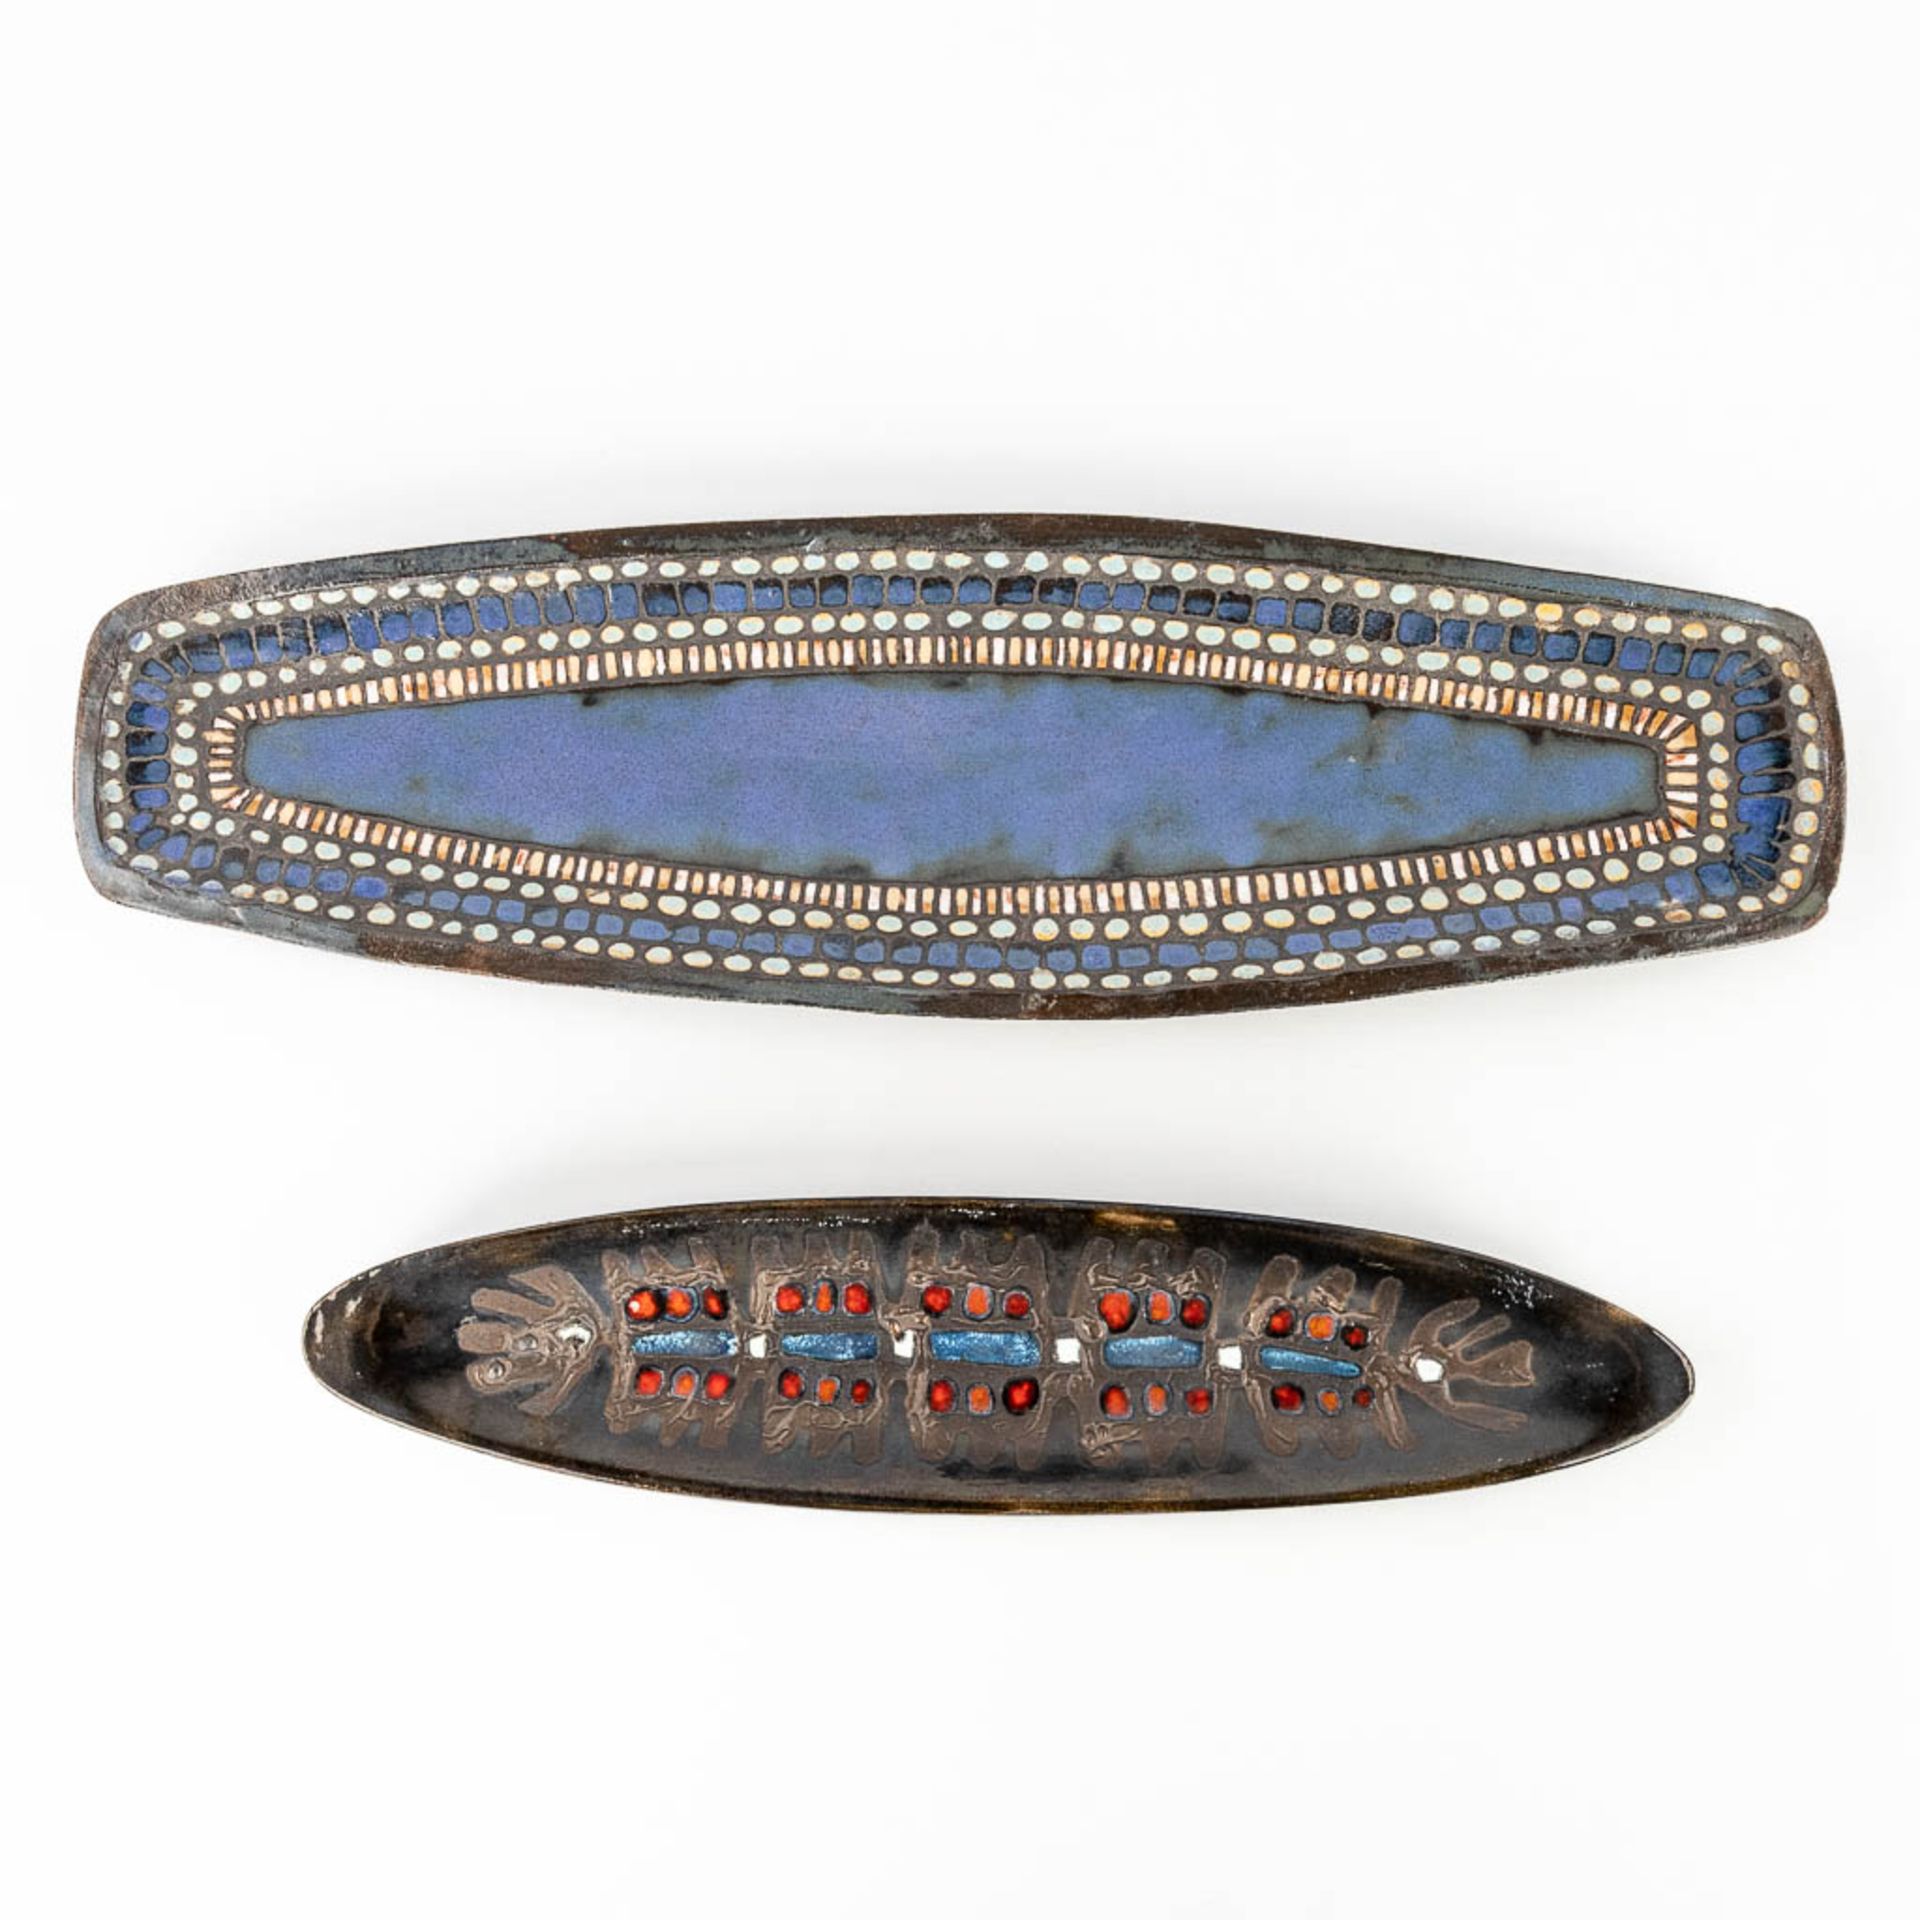 Rogier VANDEWEGHE (1923-2020) for Amphora, 'long bowl', blue glazed ceramics, added Elisabeth VANDEW